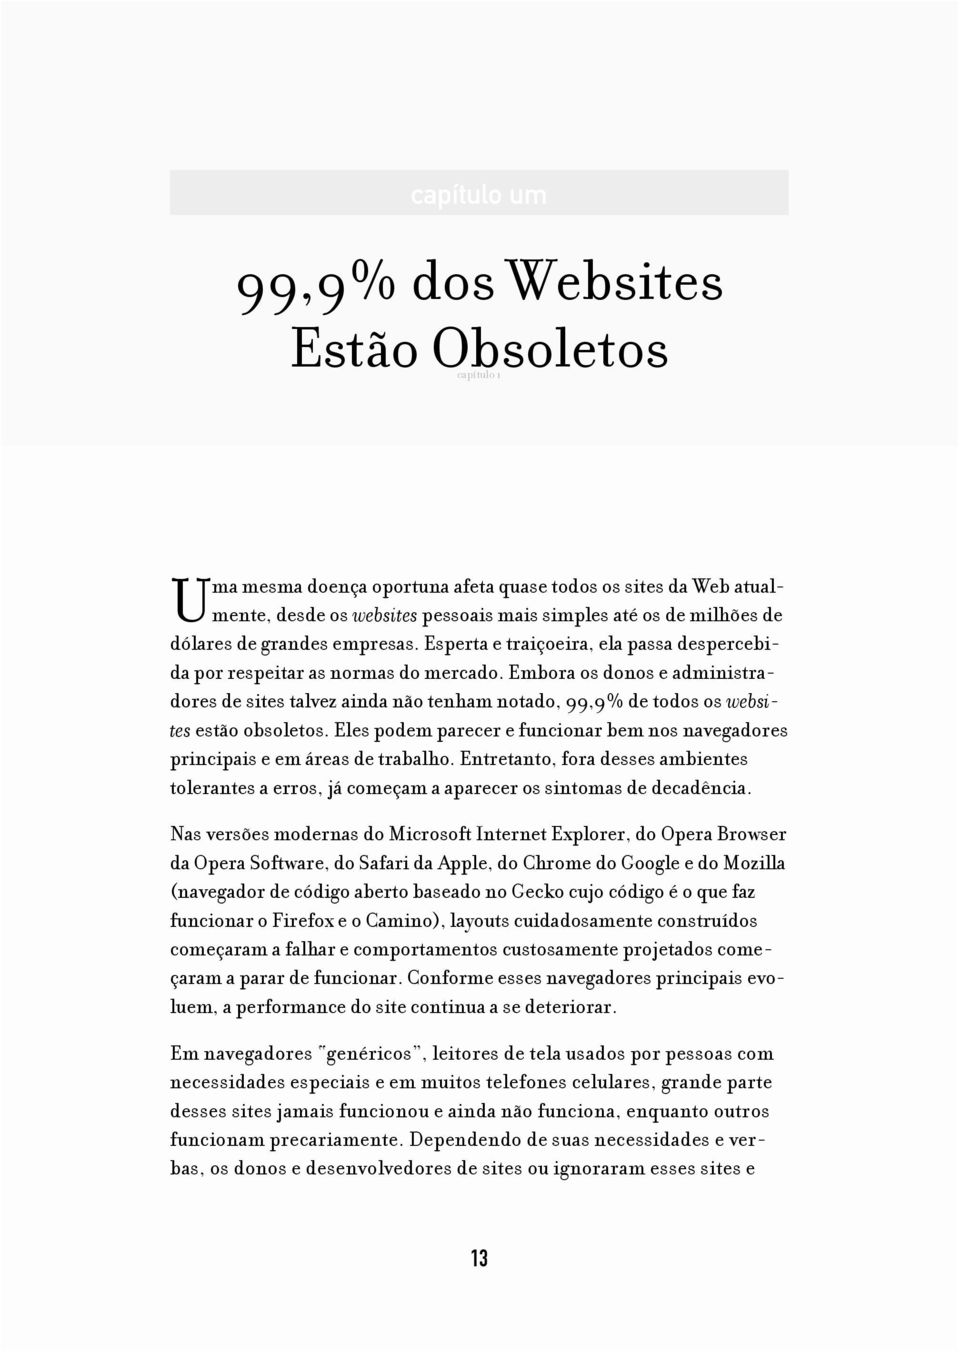 Embora os donos e administradores de sites talvez ainda não tenham notado, 99,9% de todos os websites estão obsoletos.